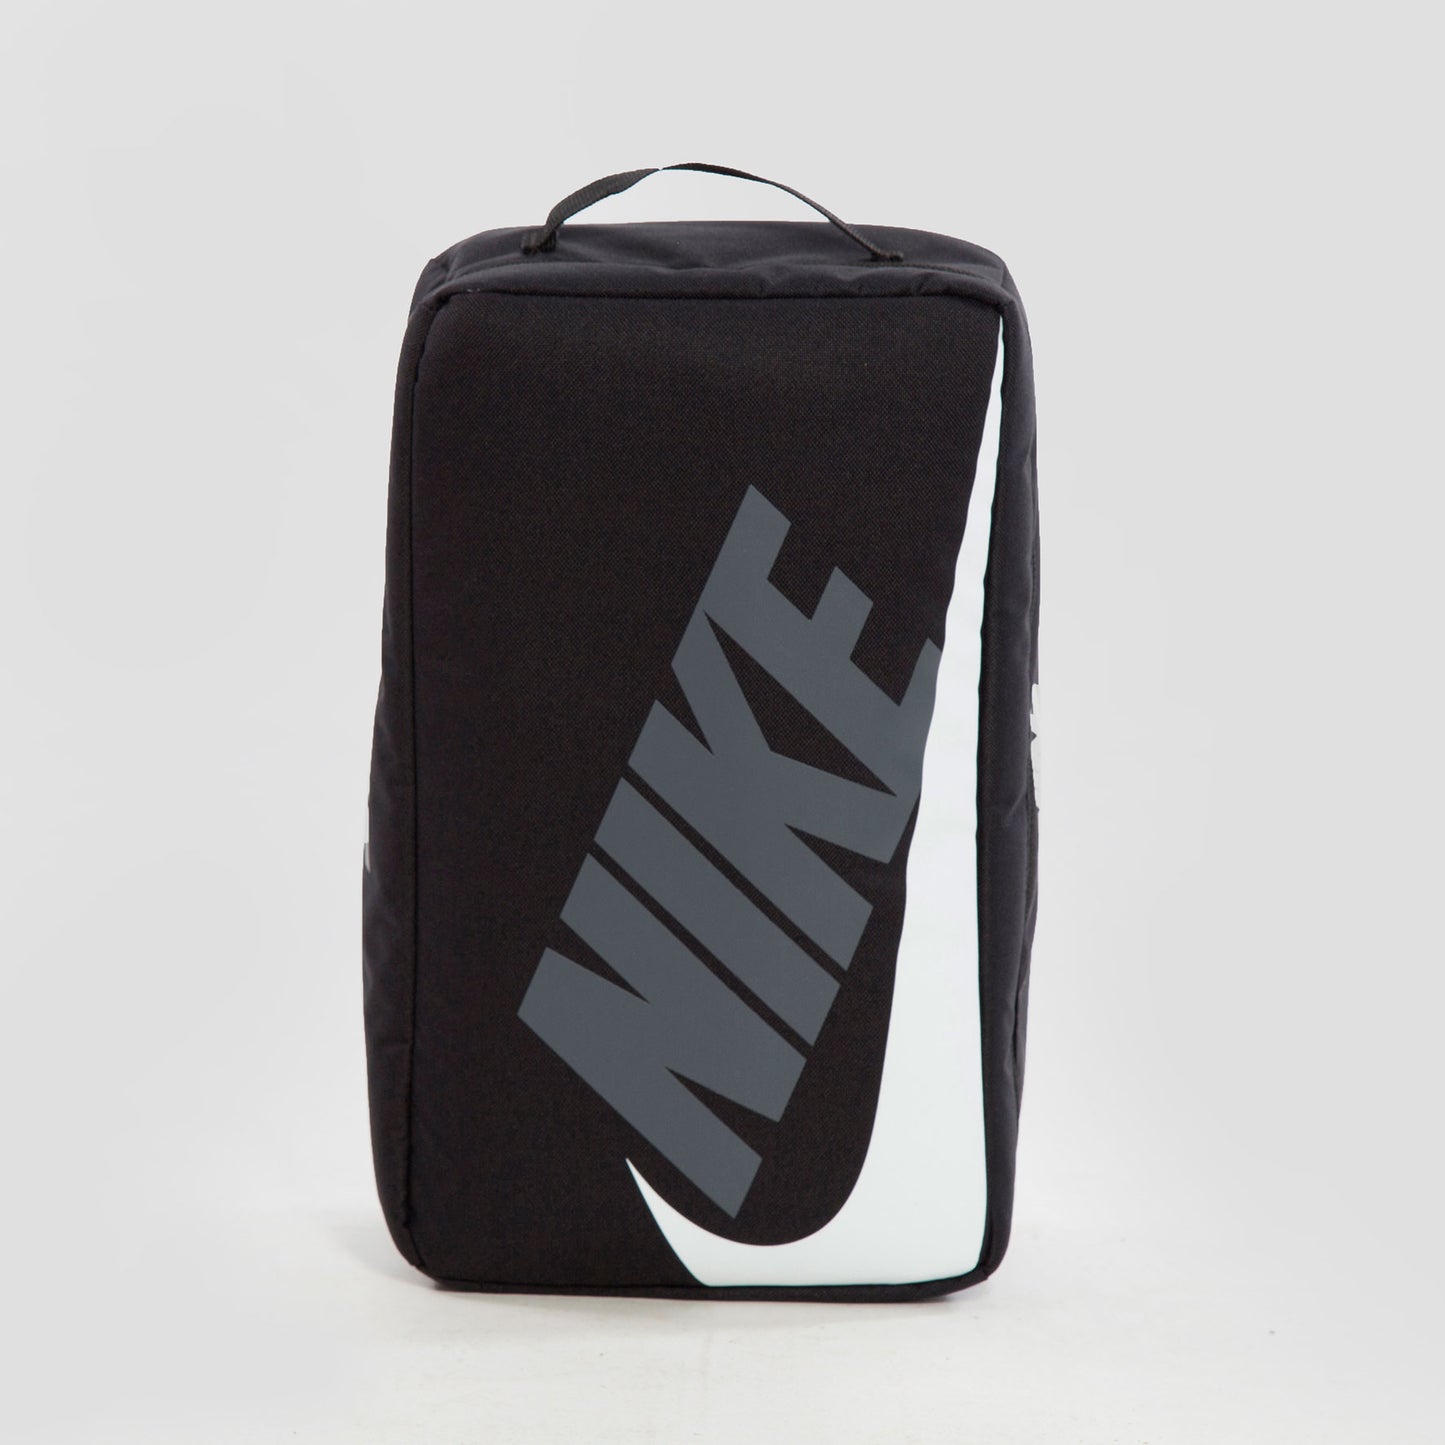 Nike Bolsa Nike Air Shoe Box - CW9266-010 - Colección Unisex